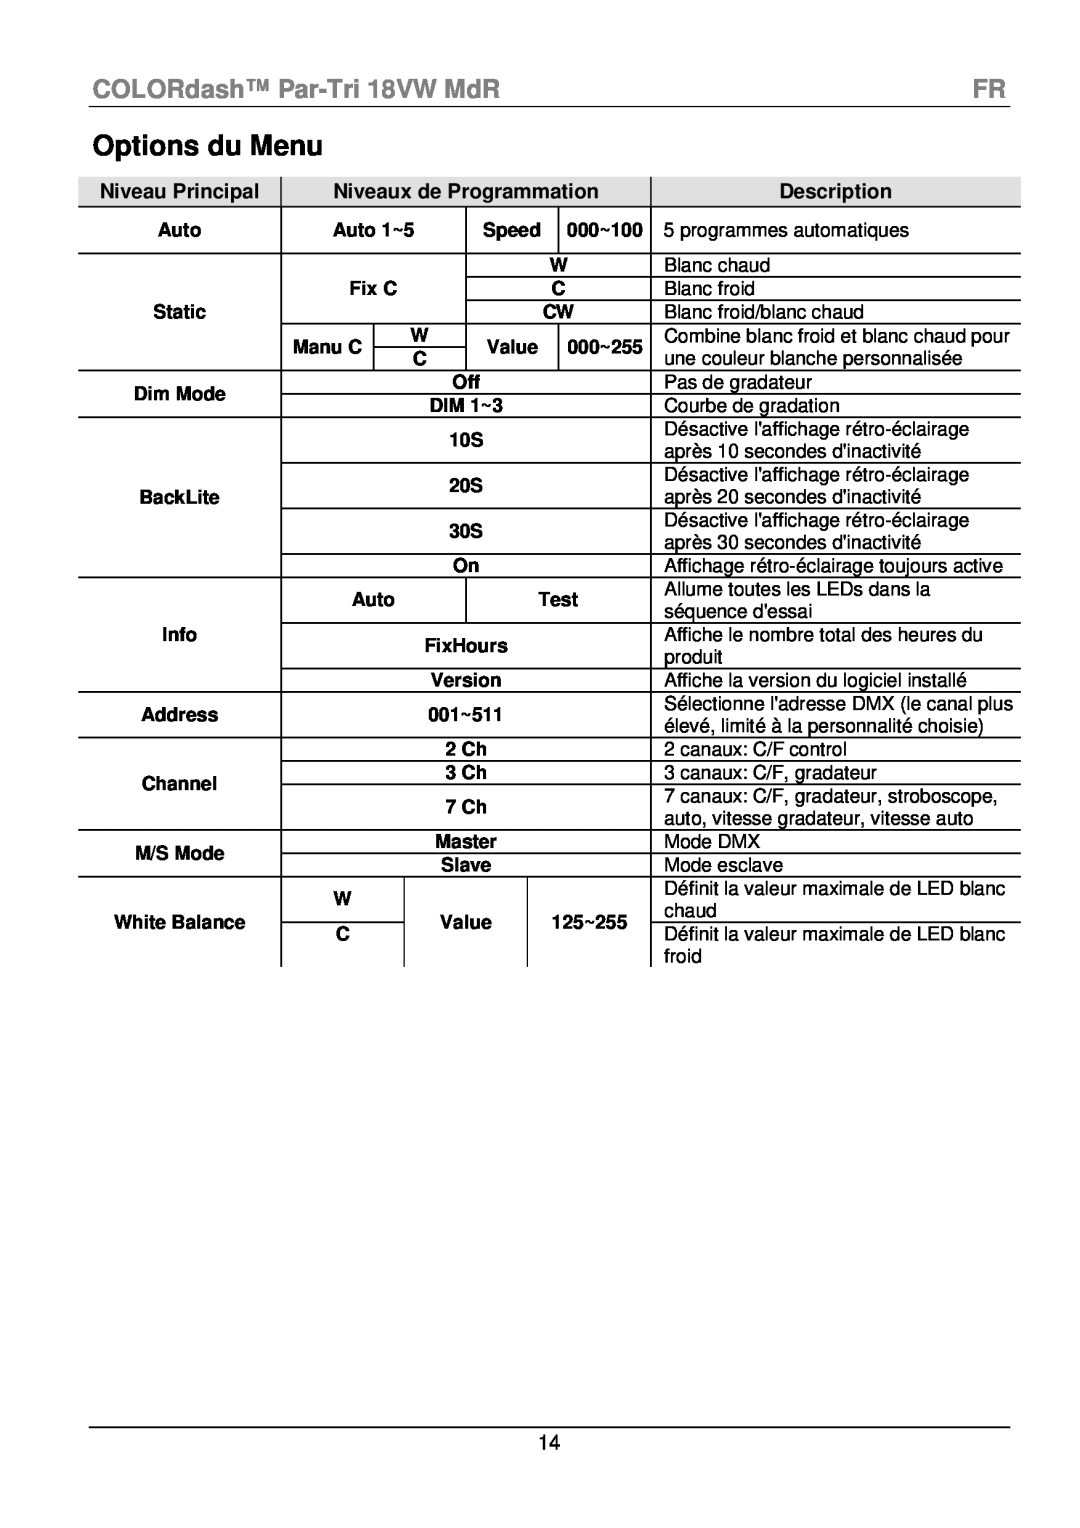 Chauvet manual Options du Menu, COLORdash Par-Tri 18VW MdRFR, Niveau Principal, Niveaux de Programmation, Description 